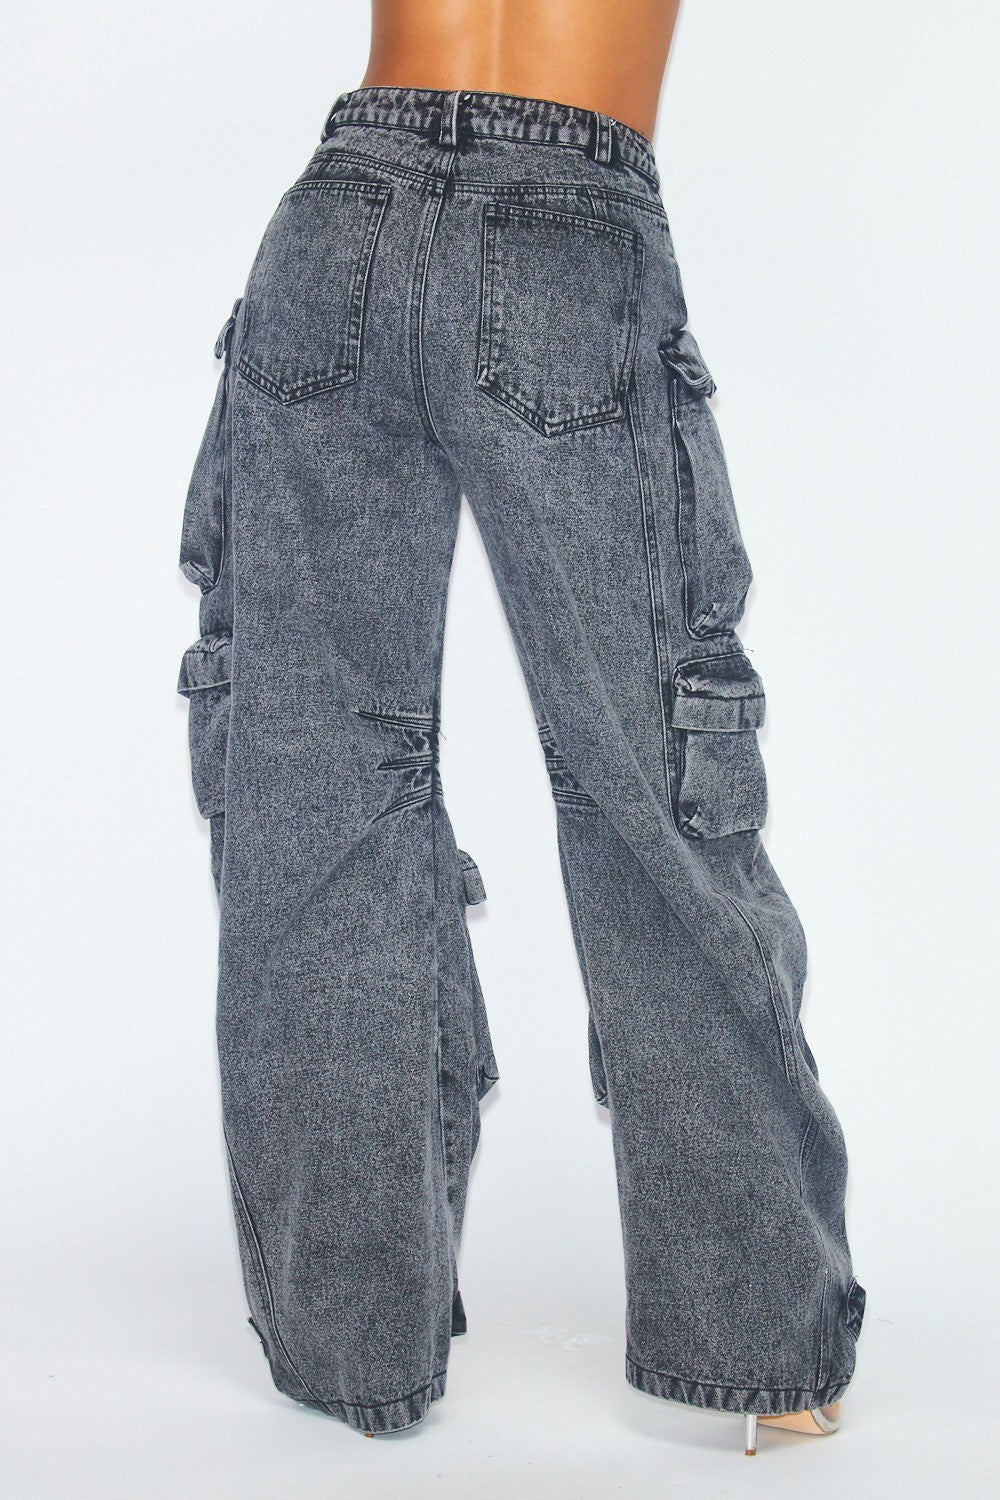 Women's cargo jeans